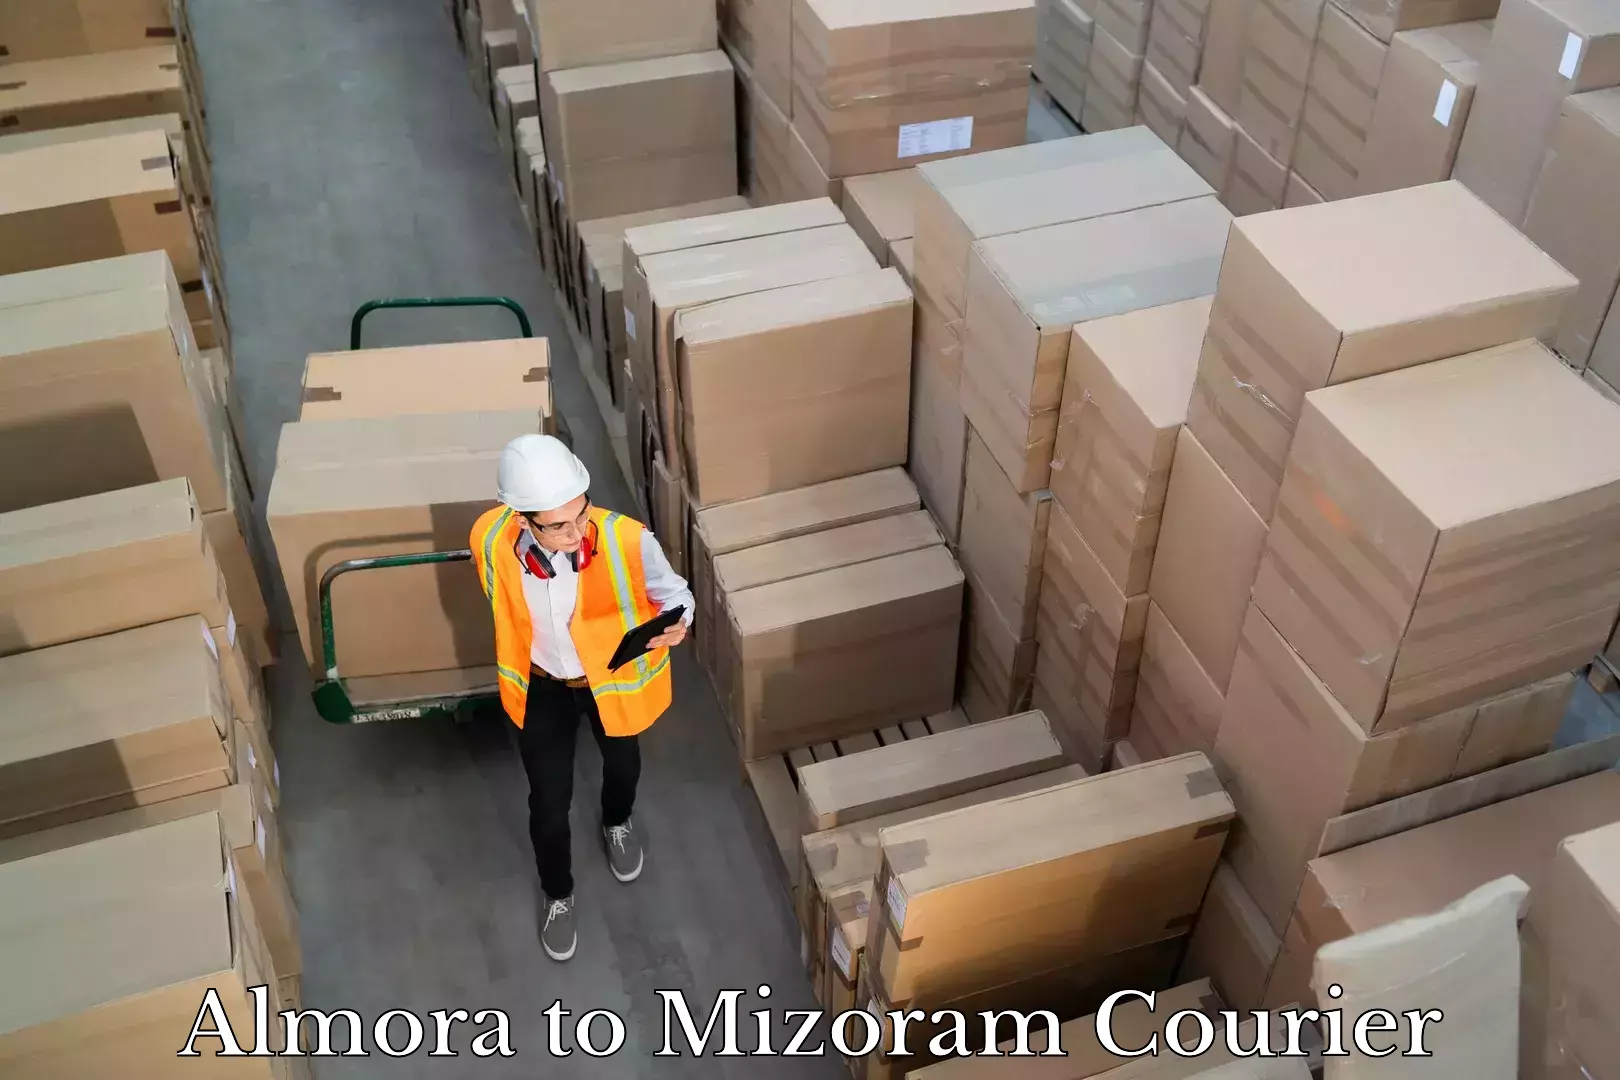 Seamless shipping service Almora to Mizoram